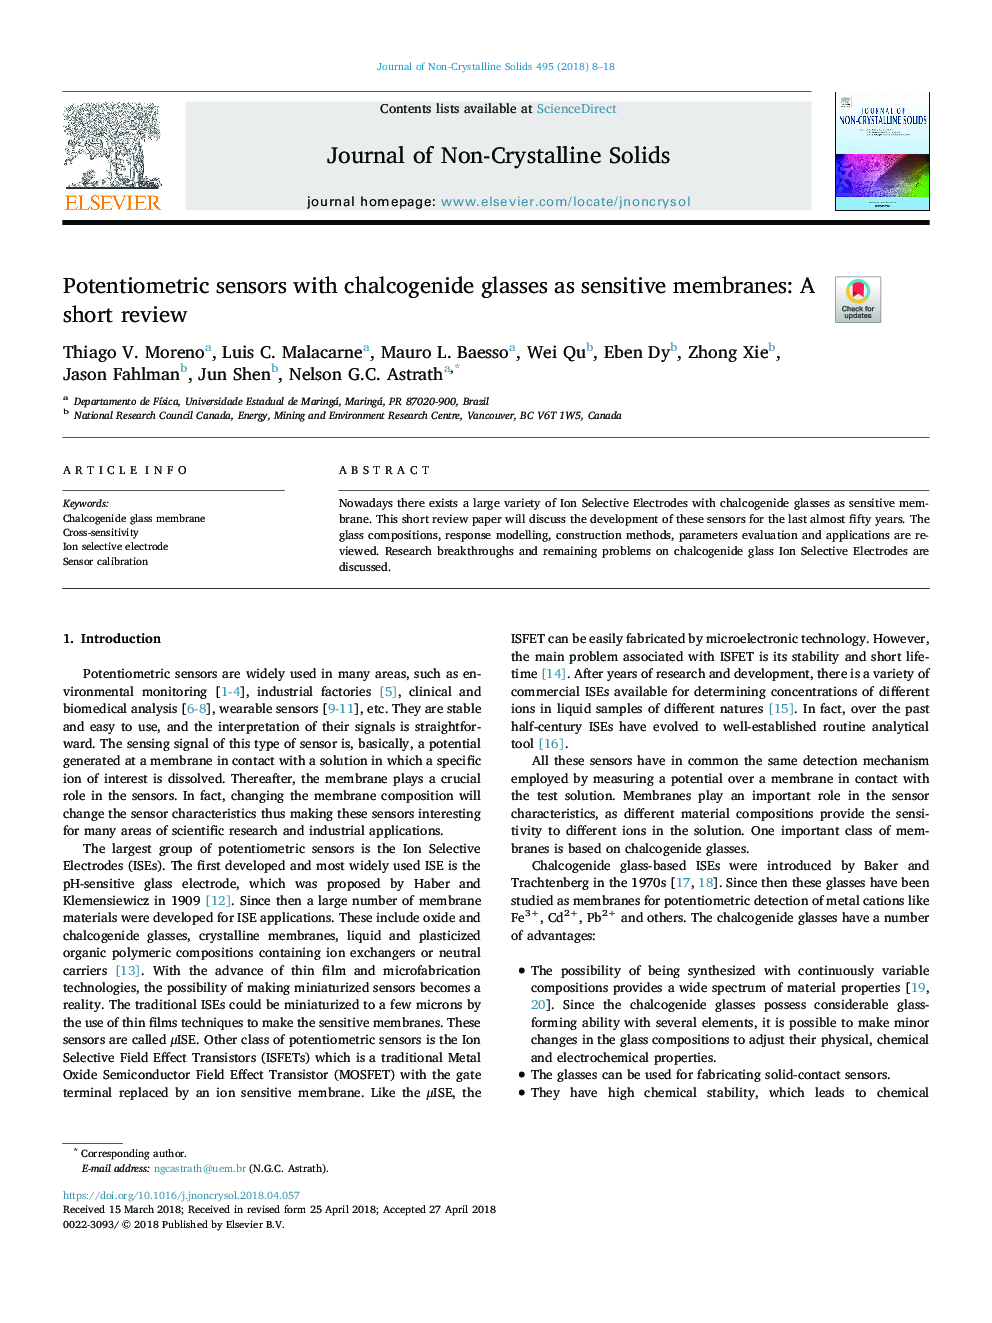 سنسورهای پتانسیومتریک با عینک های کلسکانسین به عنوان غشاء حساس: یک بررسی کوتاه 